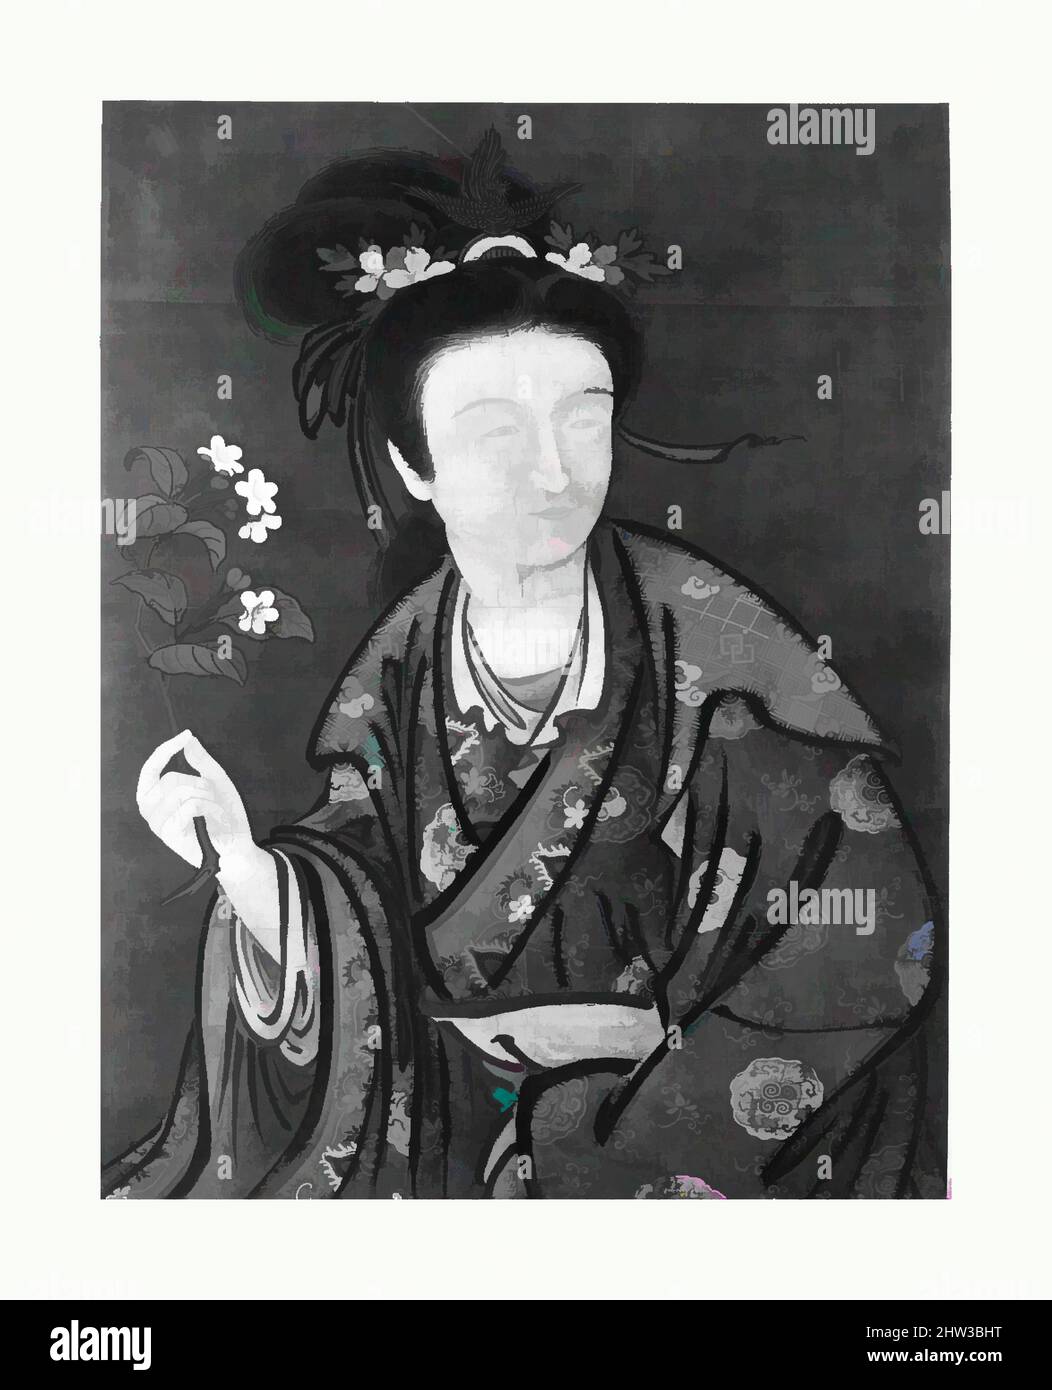 Art inspiré par Portrait d'une femme, période Edo (1615–1868), 19th siècle, Japon, peinture encadrée; encre et couleur sur soie, 35 3/4 x 27 po. (90,8 x 68,6 cm), peintures, attribuées à Tsukioka Sessai (japonais, 1761–1839), dans le style de Giuseppe Castiglione (italien, Milan 1688–1766, oeuvres classiques modernisées par Artotop avec une touche de modernité. Formes, couleur et valeur, impact visuel accrocheur sur l'art émotions par la liberté d'œuvres d'art d'une manière contemporaine. Un message intemporel qui cherche une nouvelle direction créative. Artistes qui se tournent vers le support numérique et créent le NFT Artotop Banque D'Images